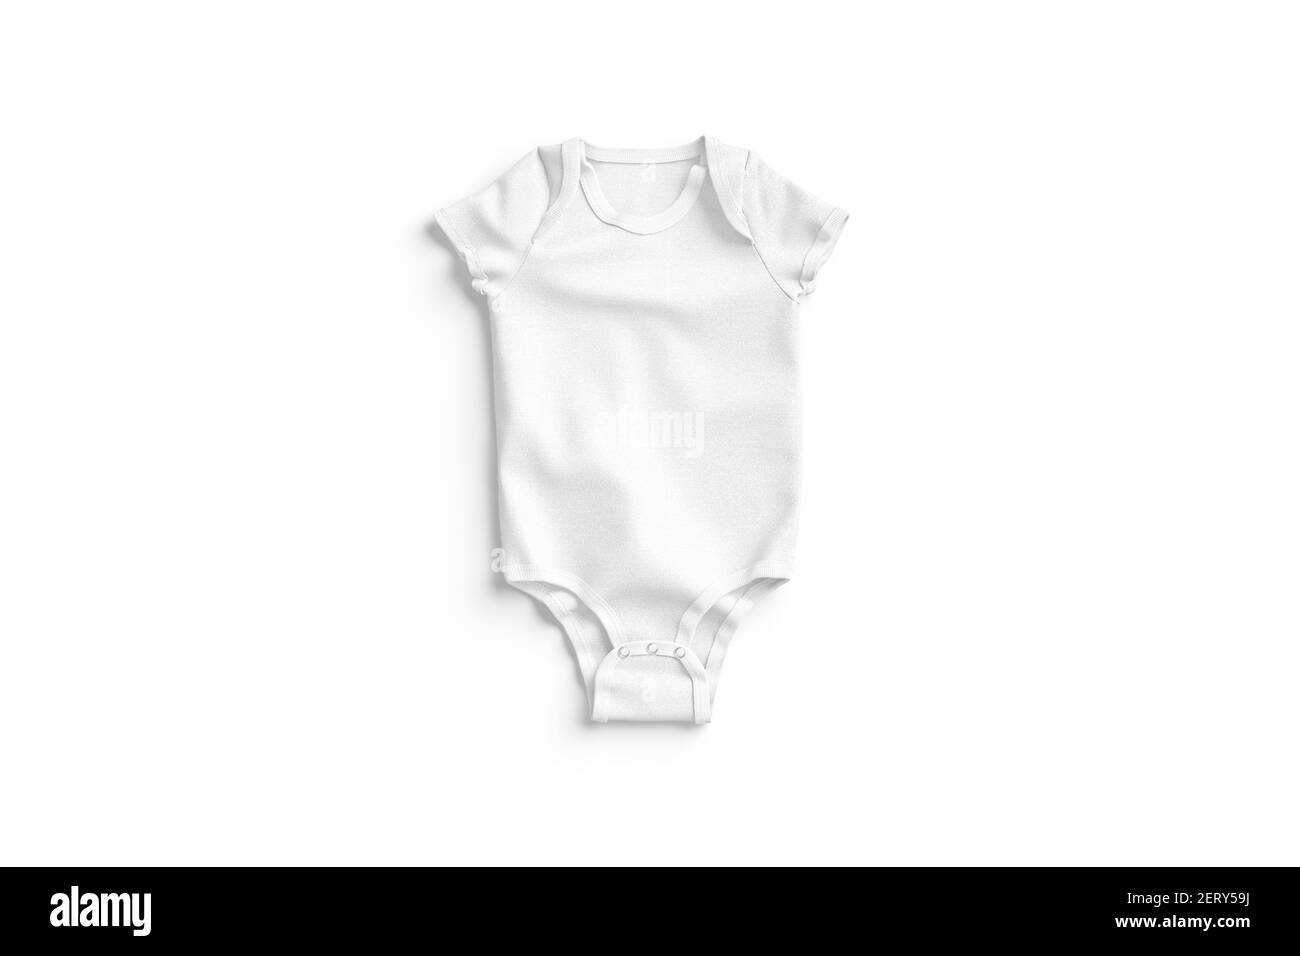 Blank weiß Halb Sleeve Baby Bodysuit Mockup liegend, Draufsicht, 3D Rendering. Leerer kleiner Textil-Jumpsuit mit Knöpfen, isoliert. Kriechgang beseitigen Stockfoto